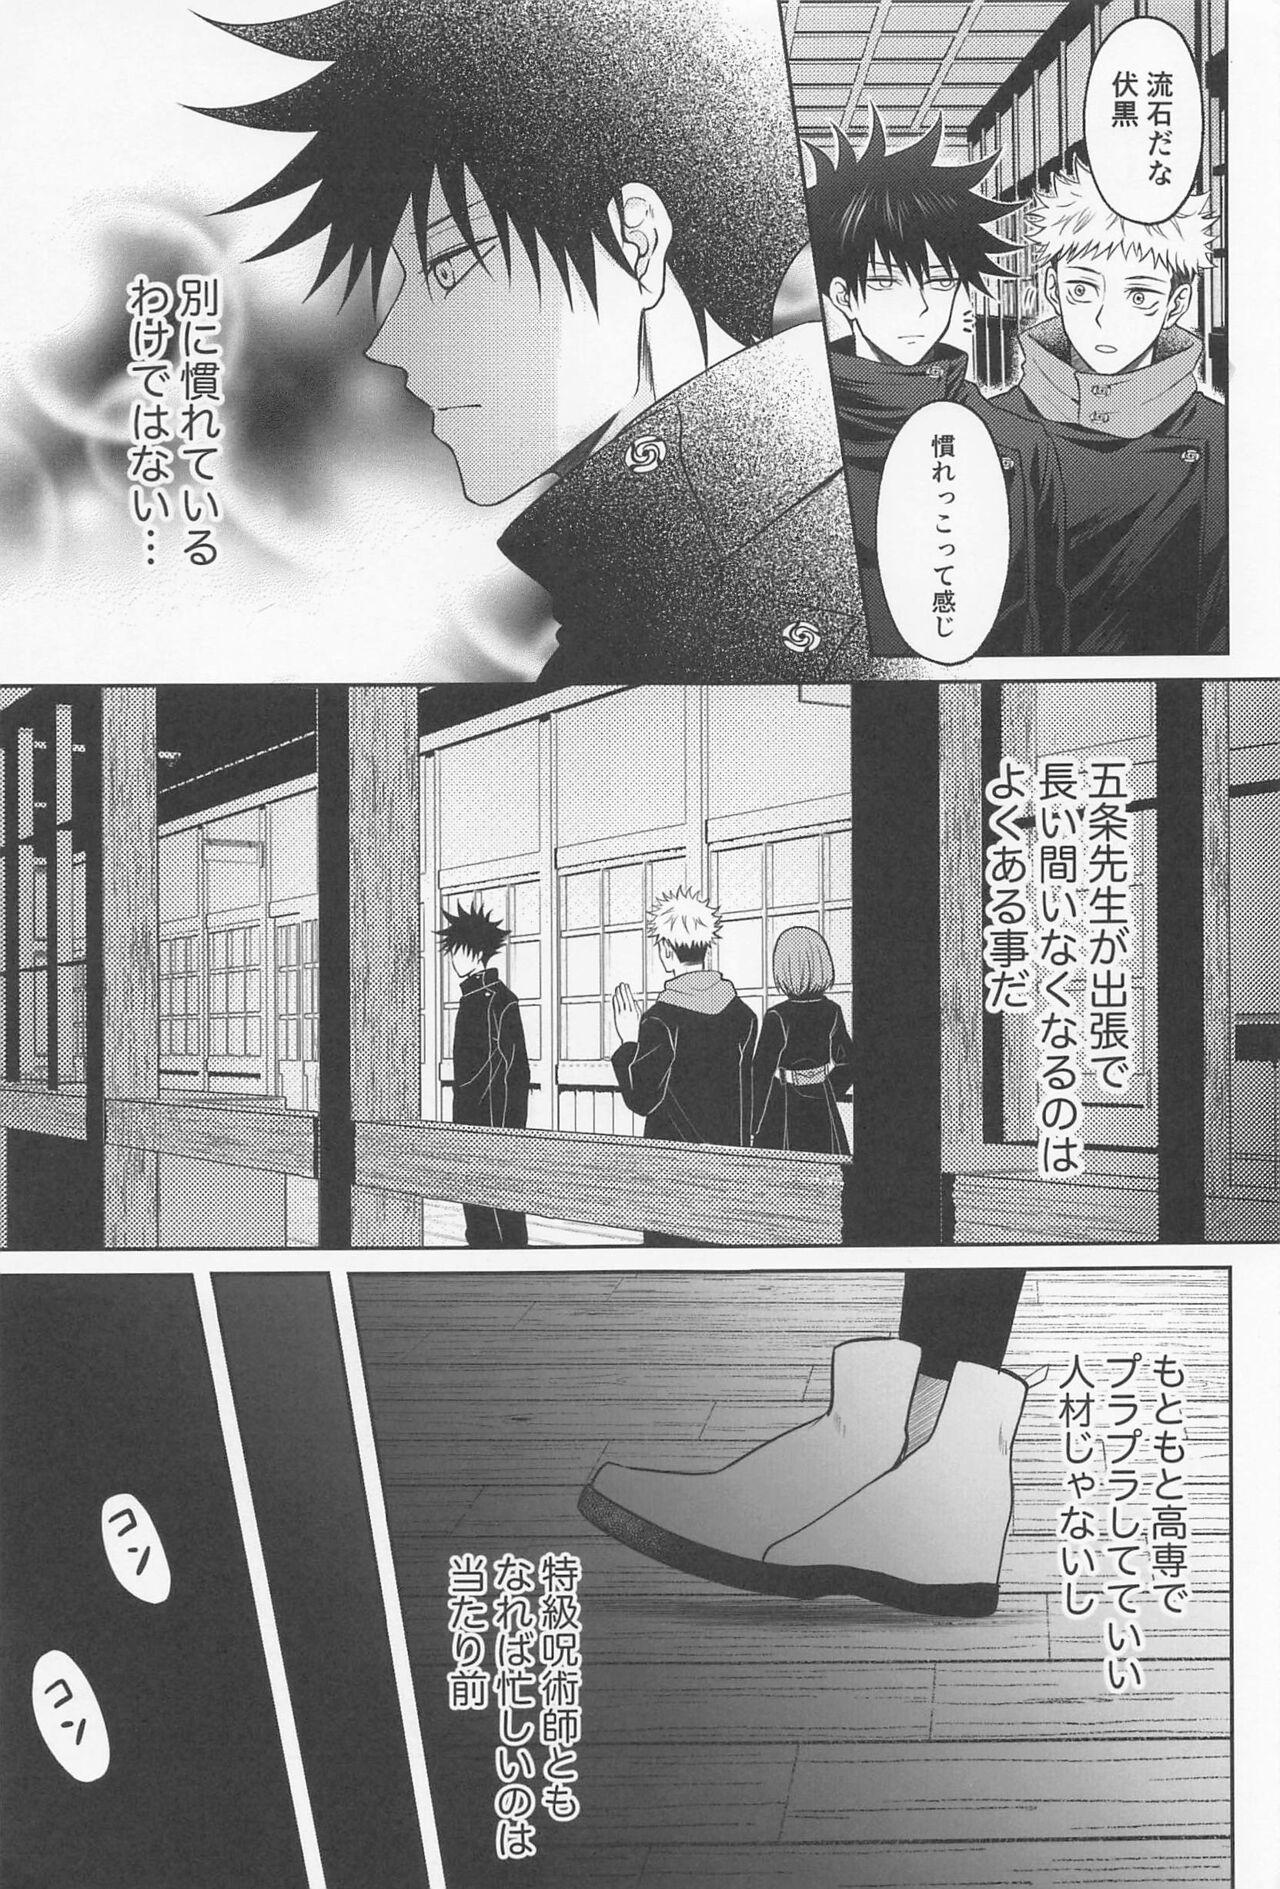 Italiana Sabishii Yoru wa Anata o Omou - Jujutsu kaisen Punished - Page 6